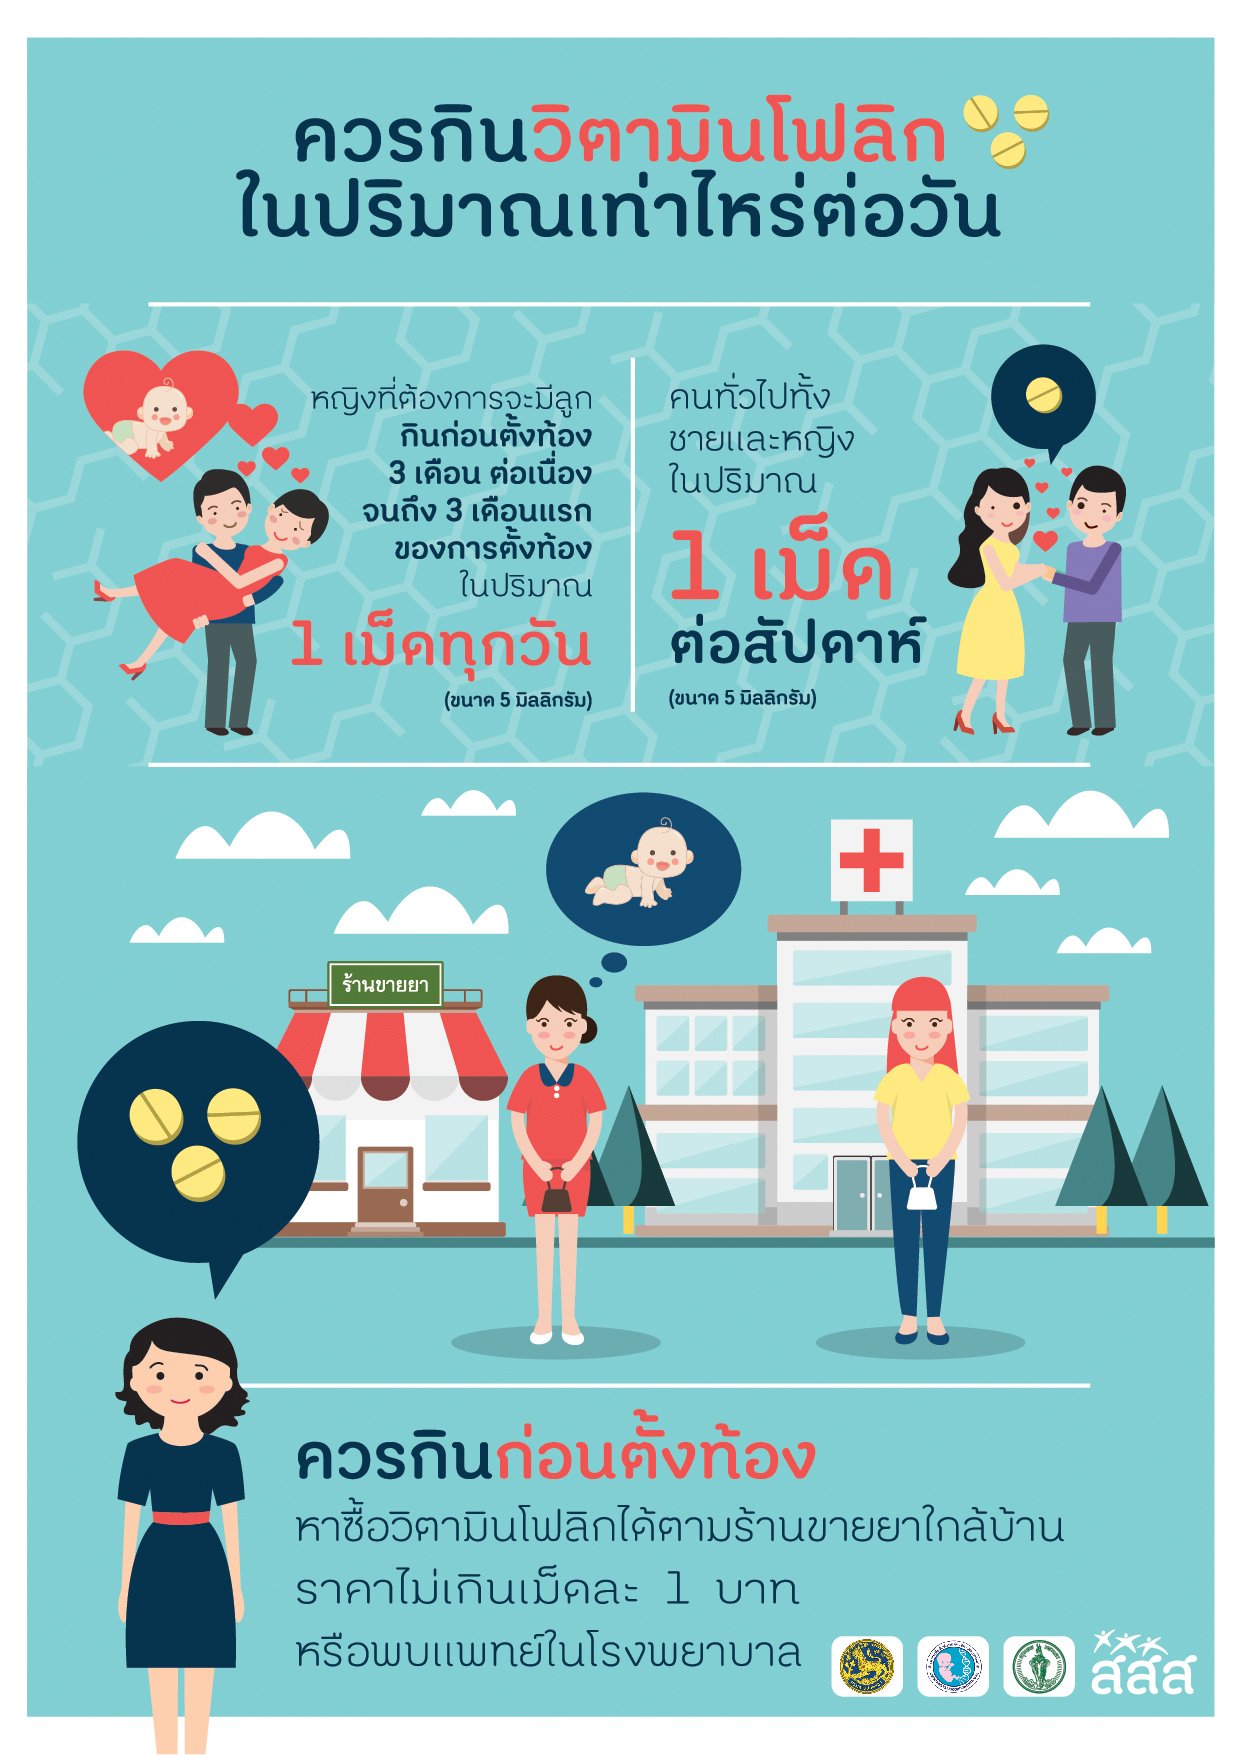 5 โรคพิการแต่กำเนิด ป้องกันได้ด้วย ‘โฟลิก’ thaihealth